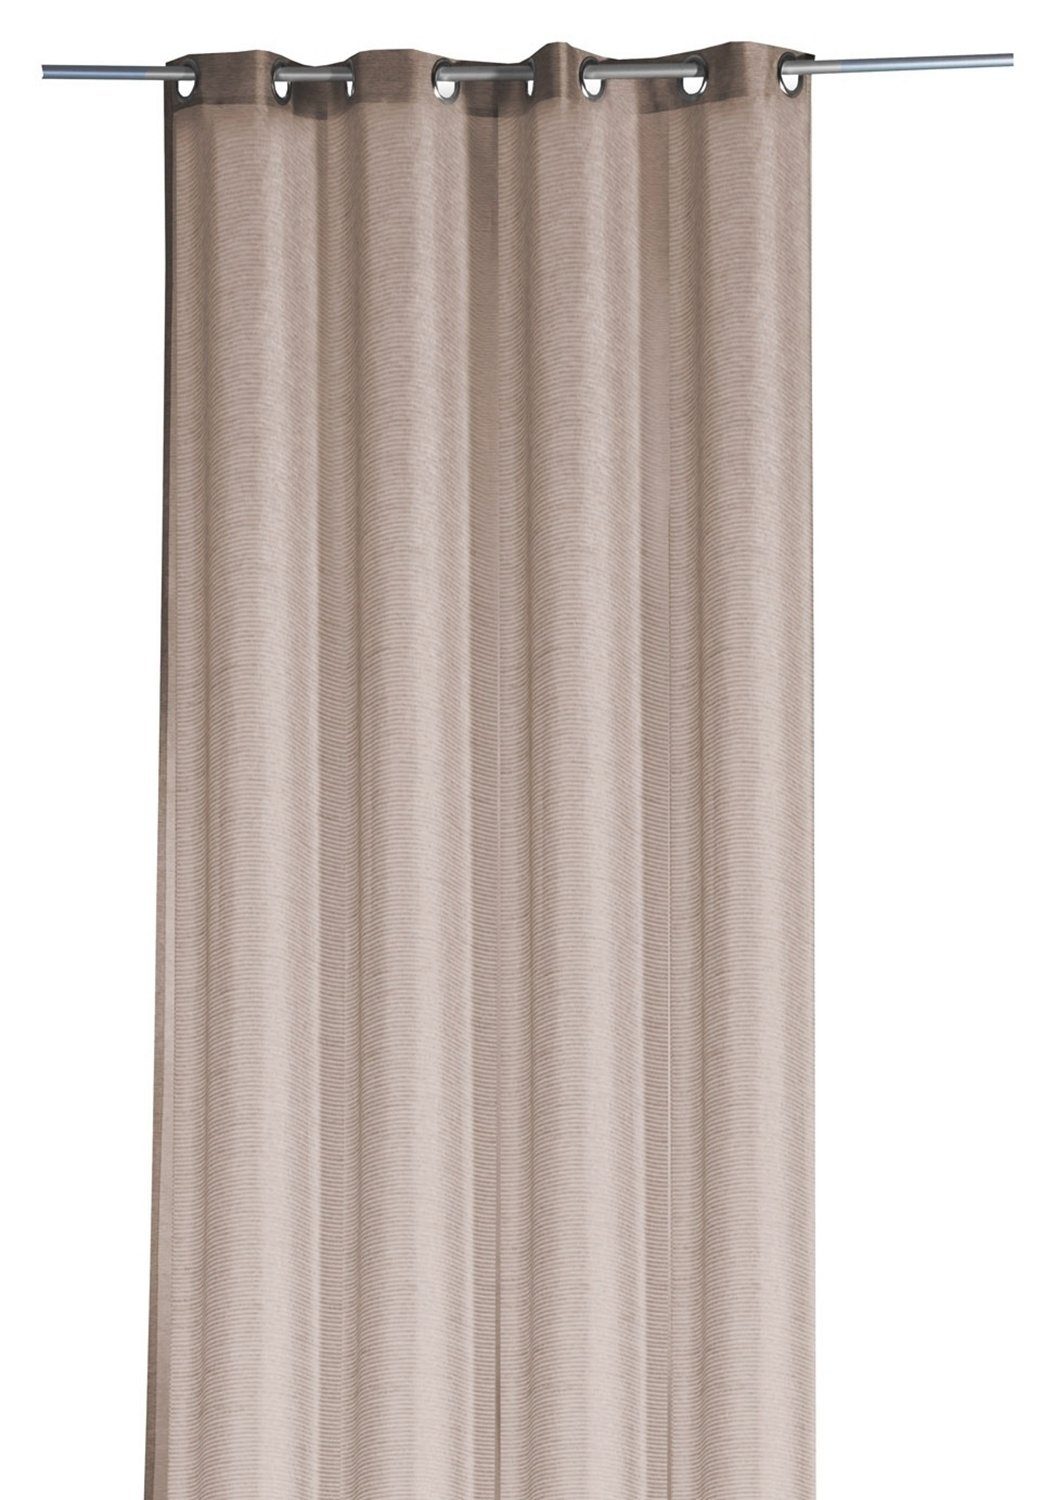 Vorhang SANDY, Ösenschal, Braun, L 245 cm x B 135 cm | Fertiggardinen